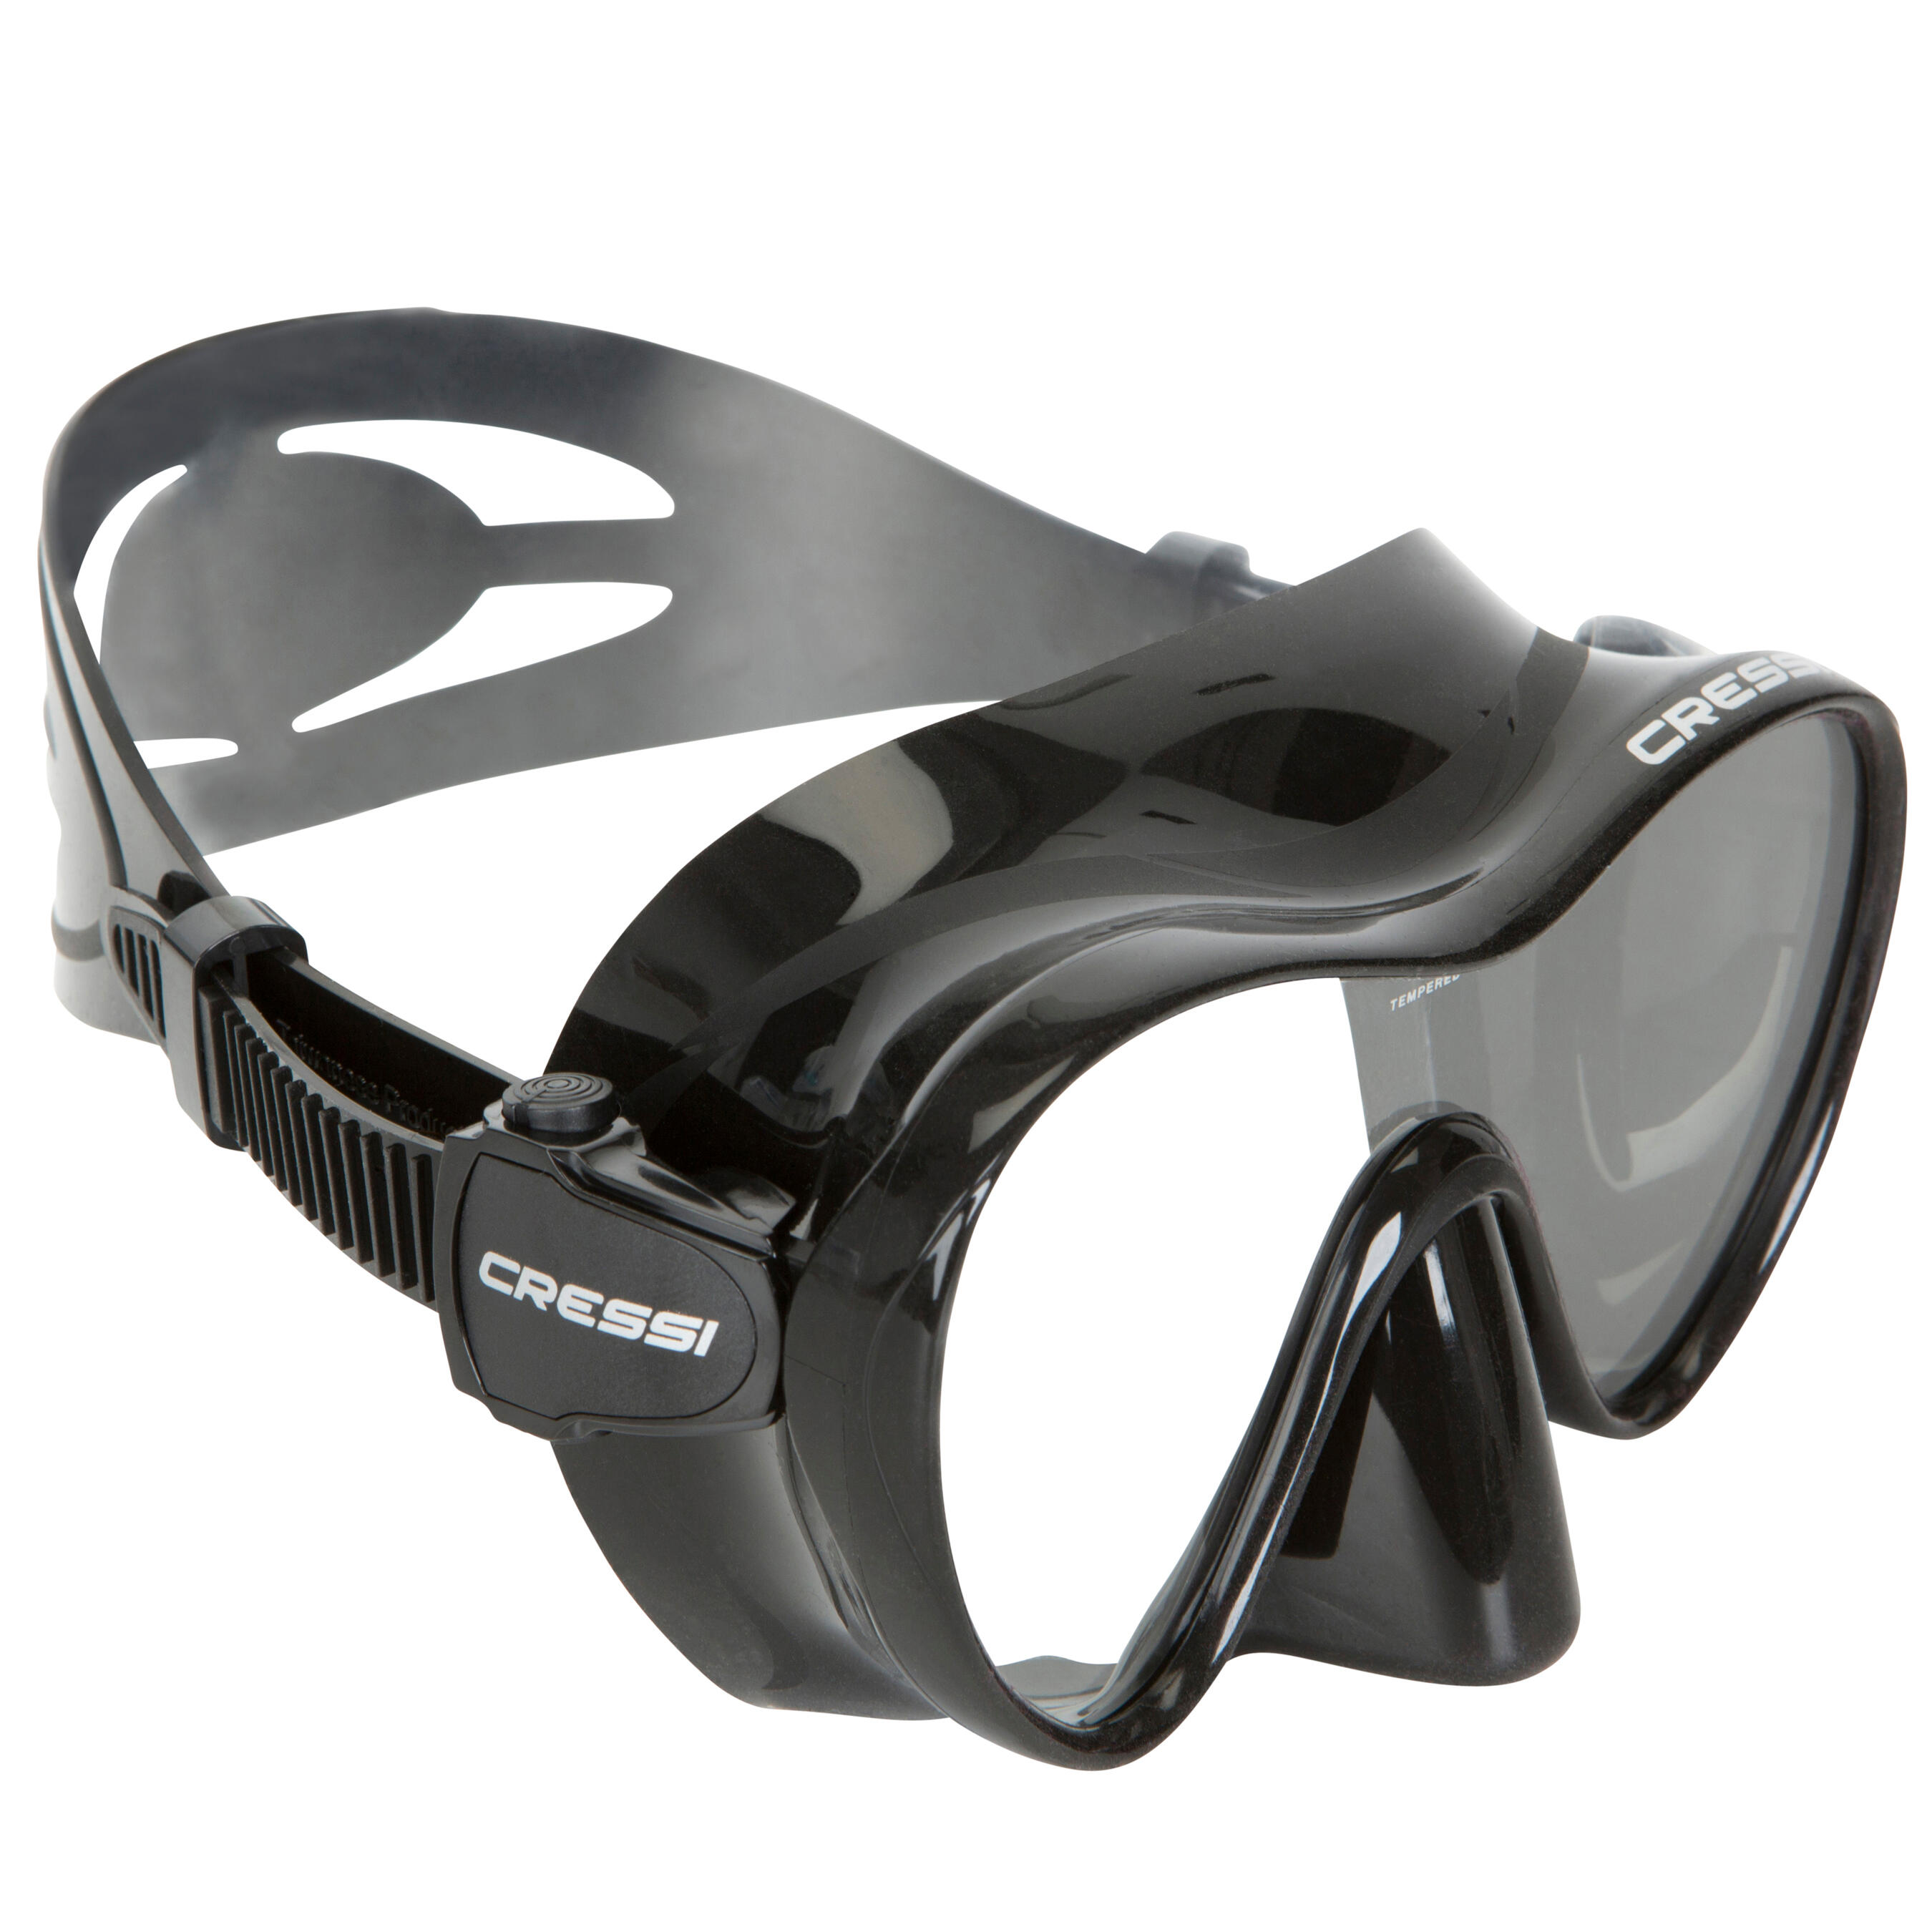 Masque snorkeling : les 5 meilleurs modèles - Ligue de la Mer